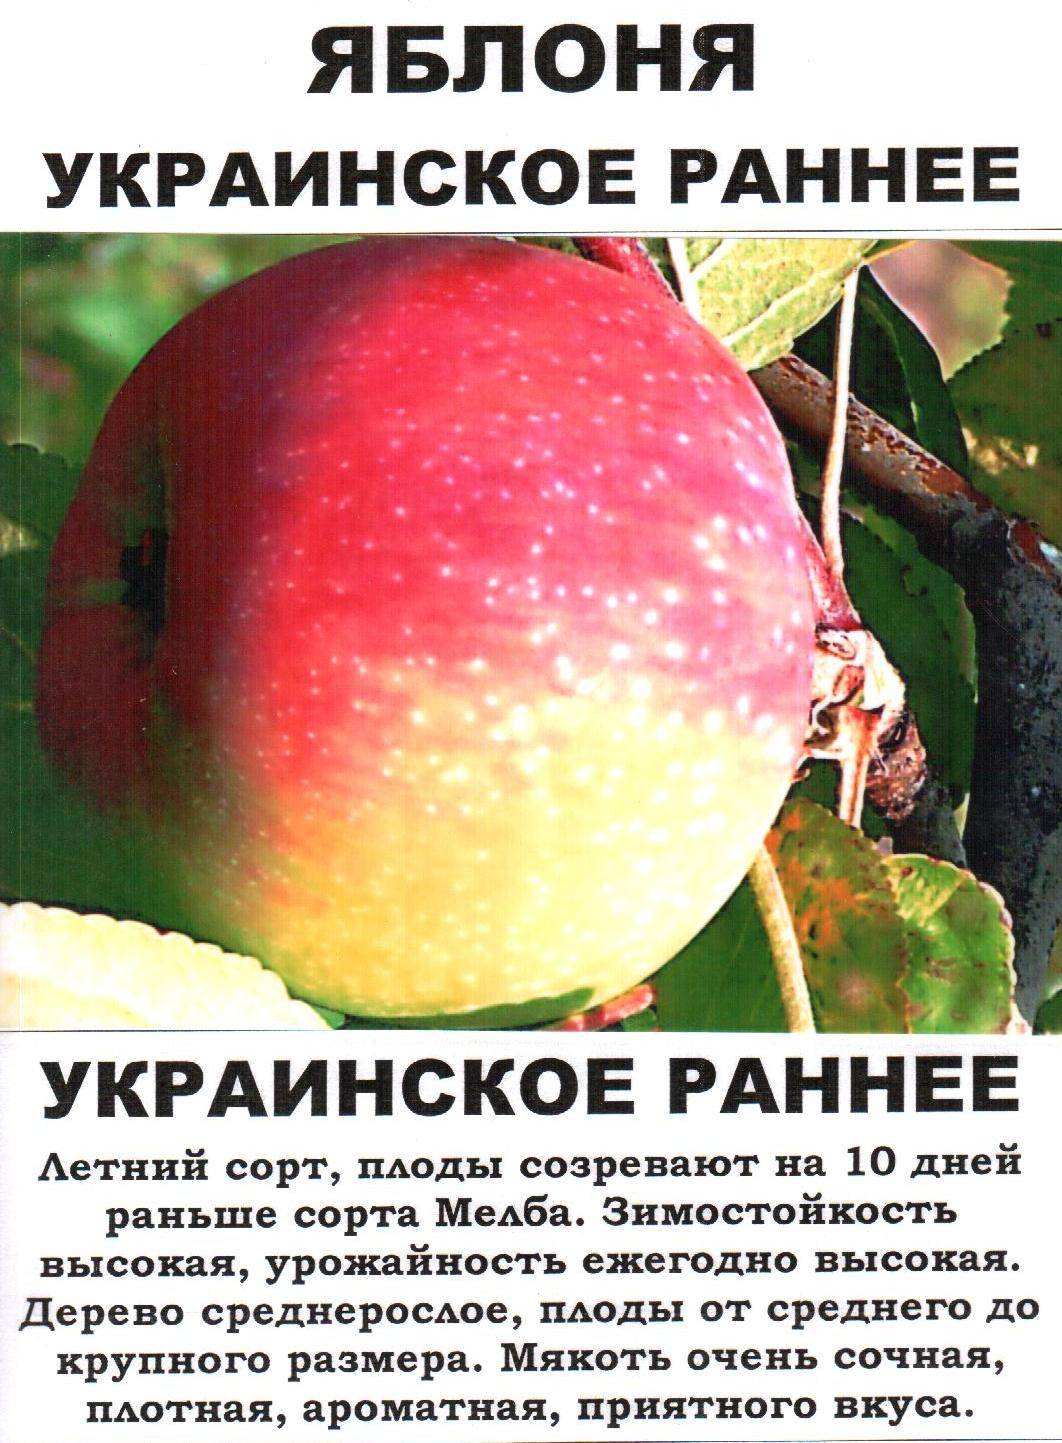 Яблоня красная ранняя описание фото отзывы. Яблоня украинская ранняя. Описание сортов яблок. Сорт яблони украинское раннее. Ранние сорта яблок.